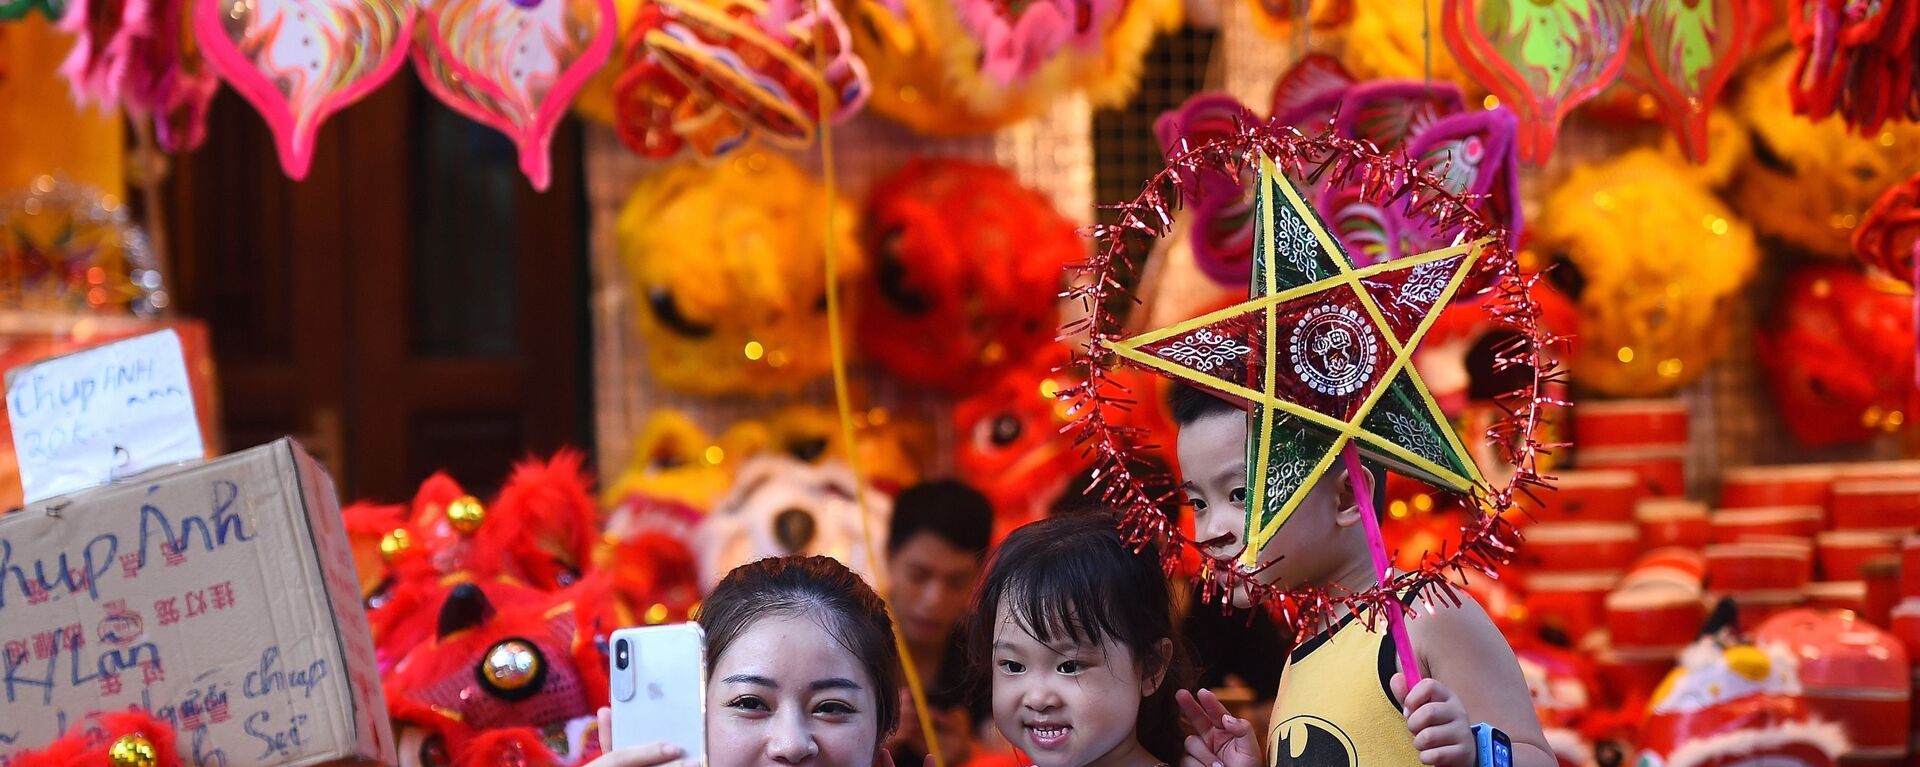 Một người phụ nữ Việt Nam chụp ảnh tự sướng cùng hai con ở khu phố cổ Hà Nội trước thềm Lễ hội Trung thu sắp tới. - Sputnik Việt Nam, 1920, 13.09.2019